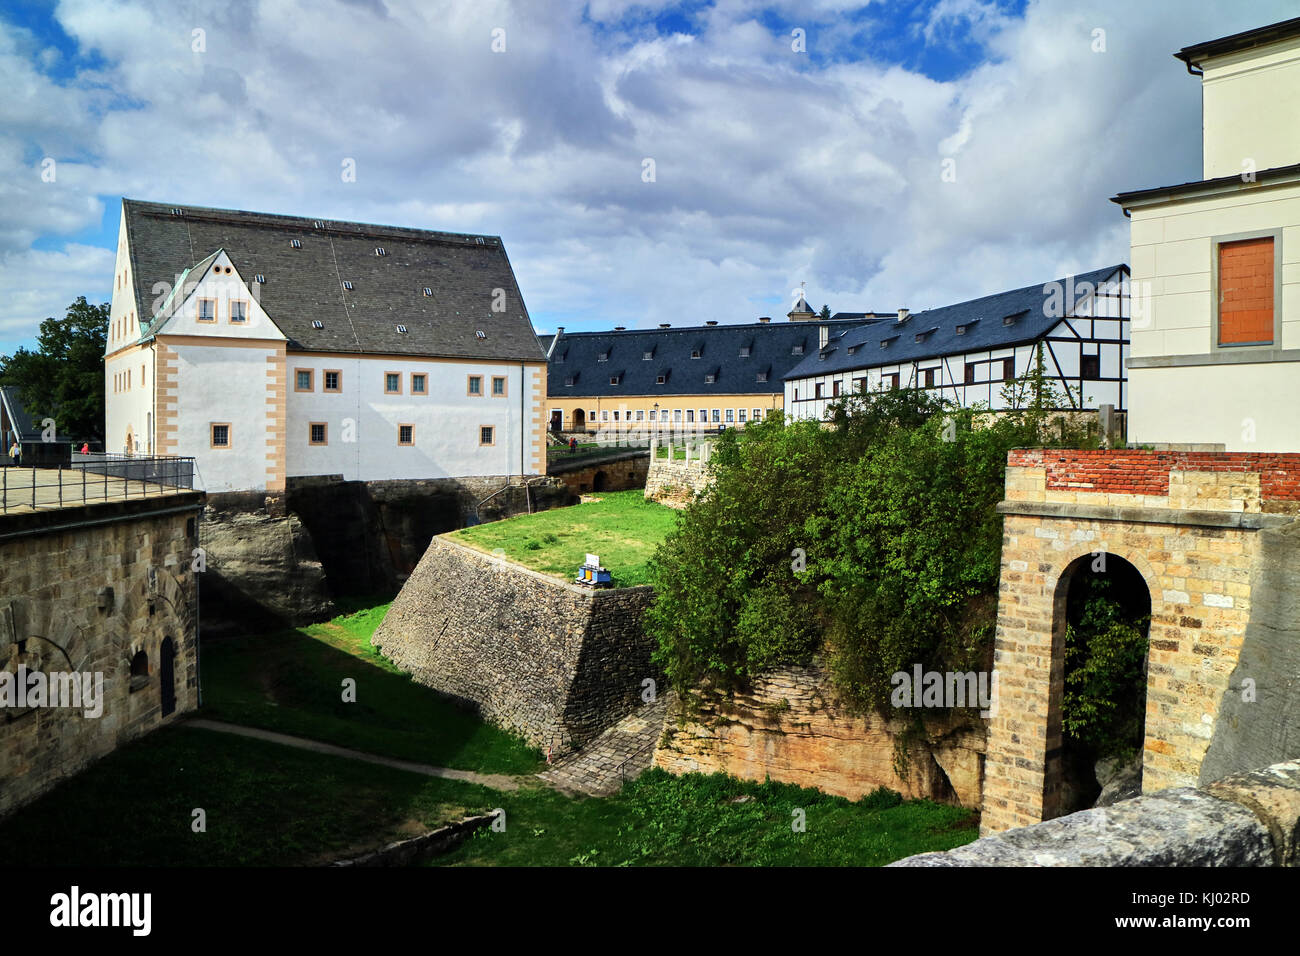 En Europa, Alemania, Sajonia, Königstein Fortaleza (Alemán: Festung Königstein), el 'Saxon Bastille", es una fortaleza en la cima de la colina, cerca de Dresden, en la suiza sajona, Alemania, por encima del pueblo de Königstein, en la orilla izquierda del río Elba. Es una de las mayores fortificaciones en la cima de la montaña en Europa y se asienta sobre la tabla colina del mismo nombre. Foto de stock